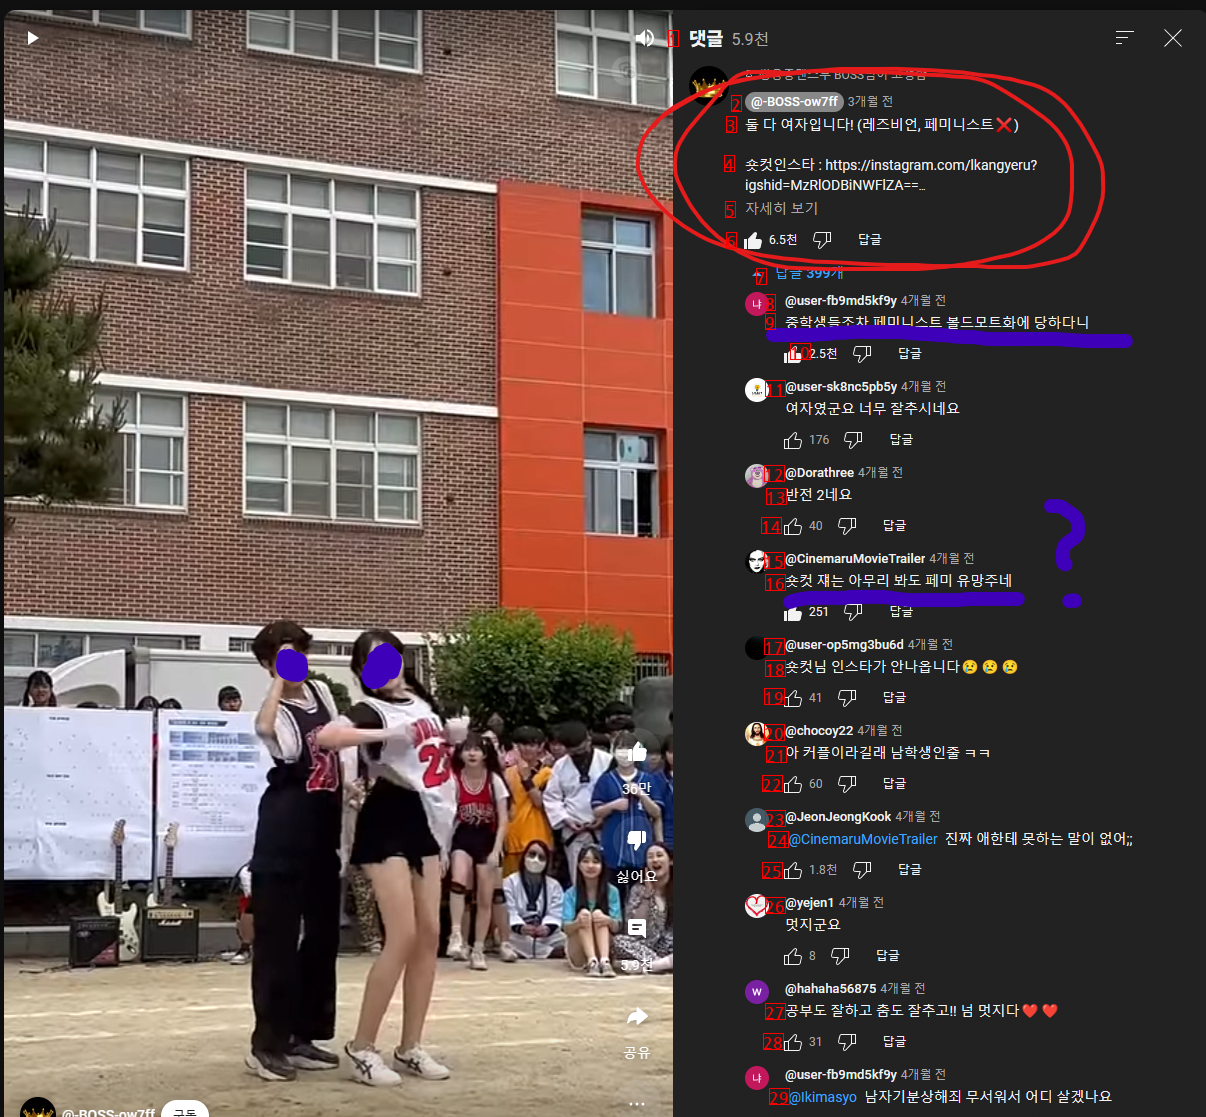 女子中学生x女子中学生カップルダンスについてのコメント www